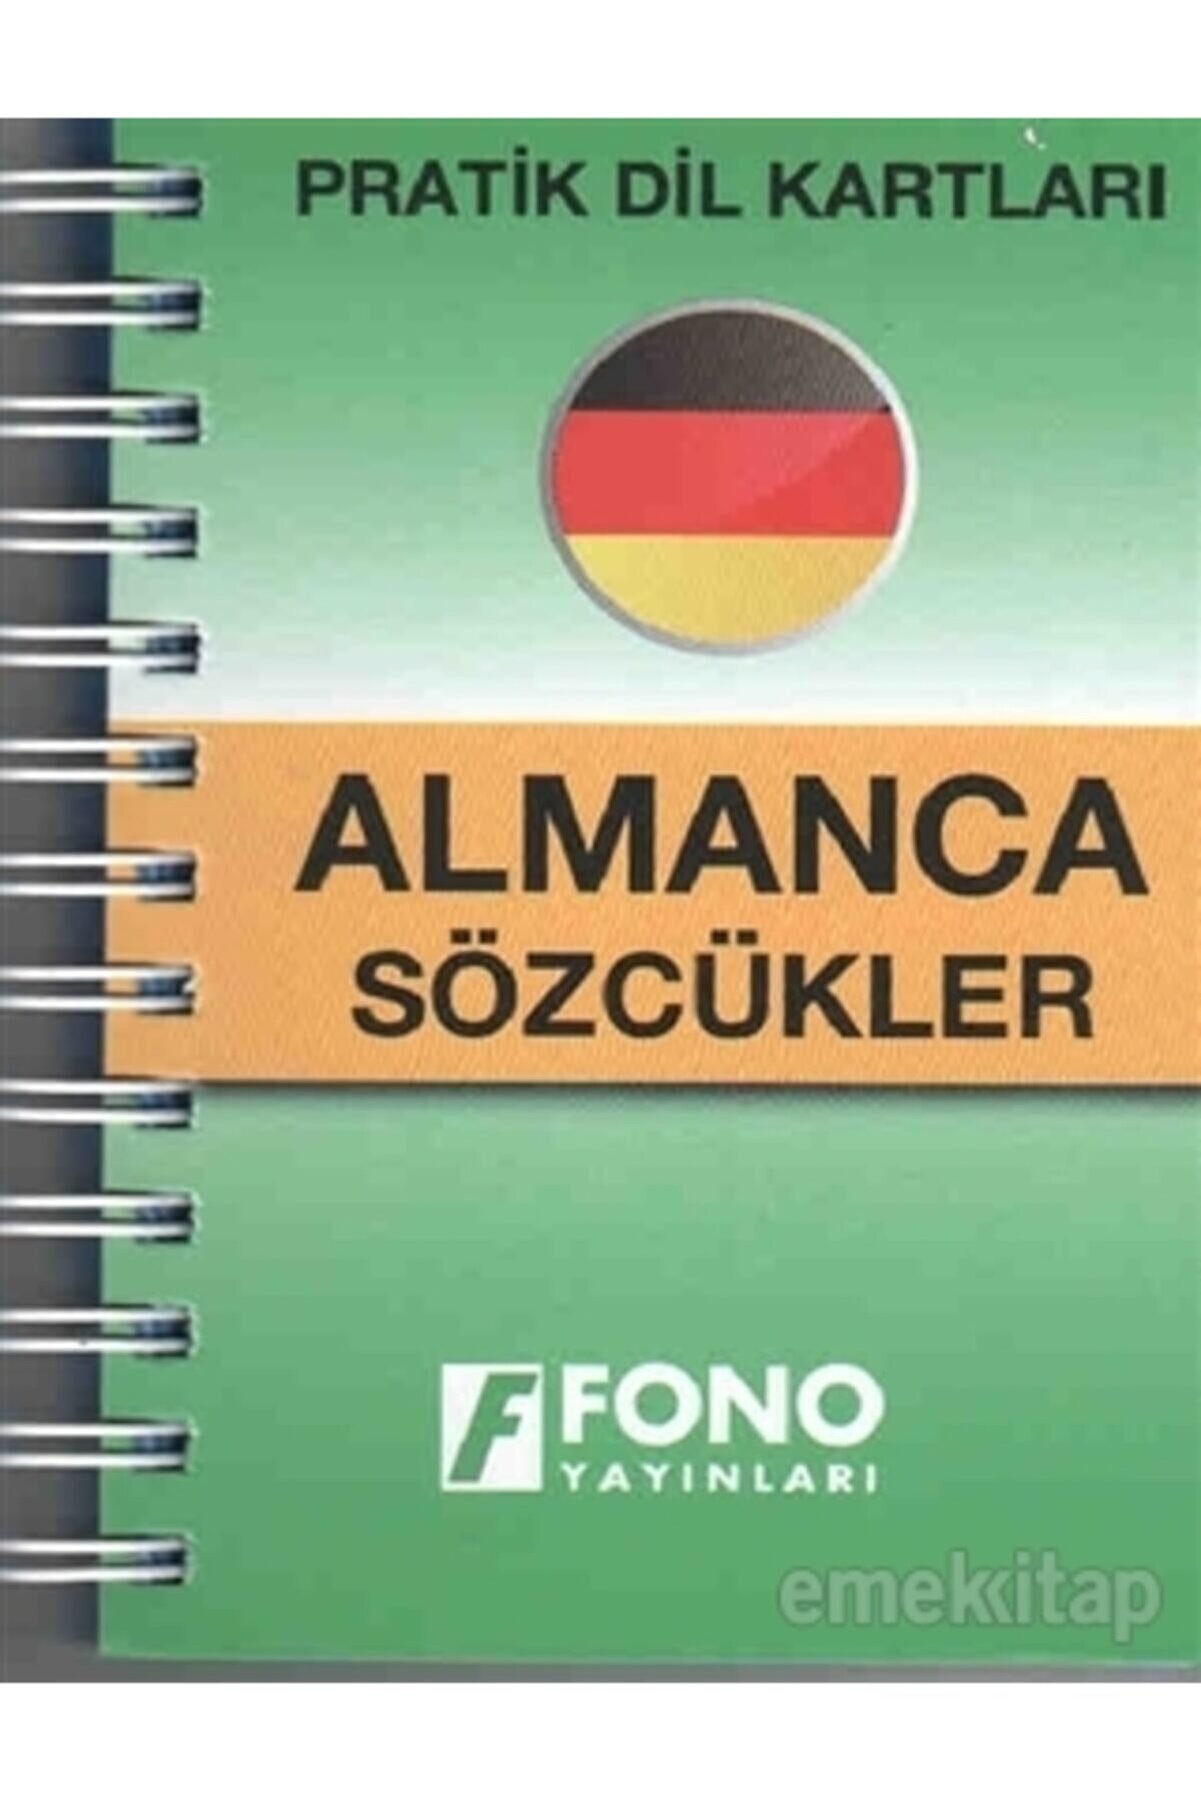 Fono Yayınları Pratik Dil Kartları - Almanca Sözcükler